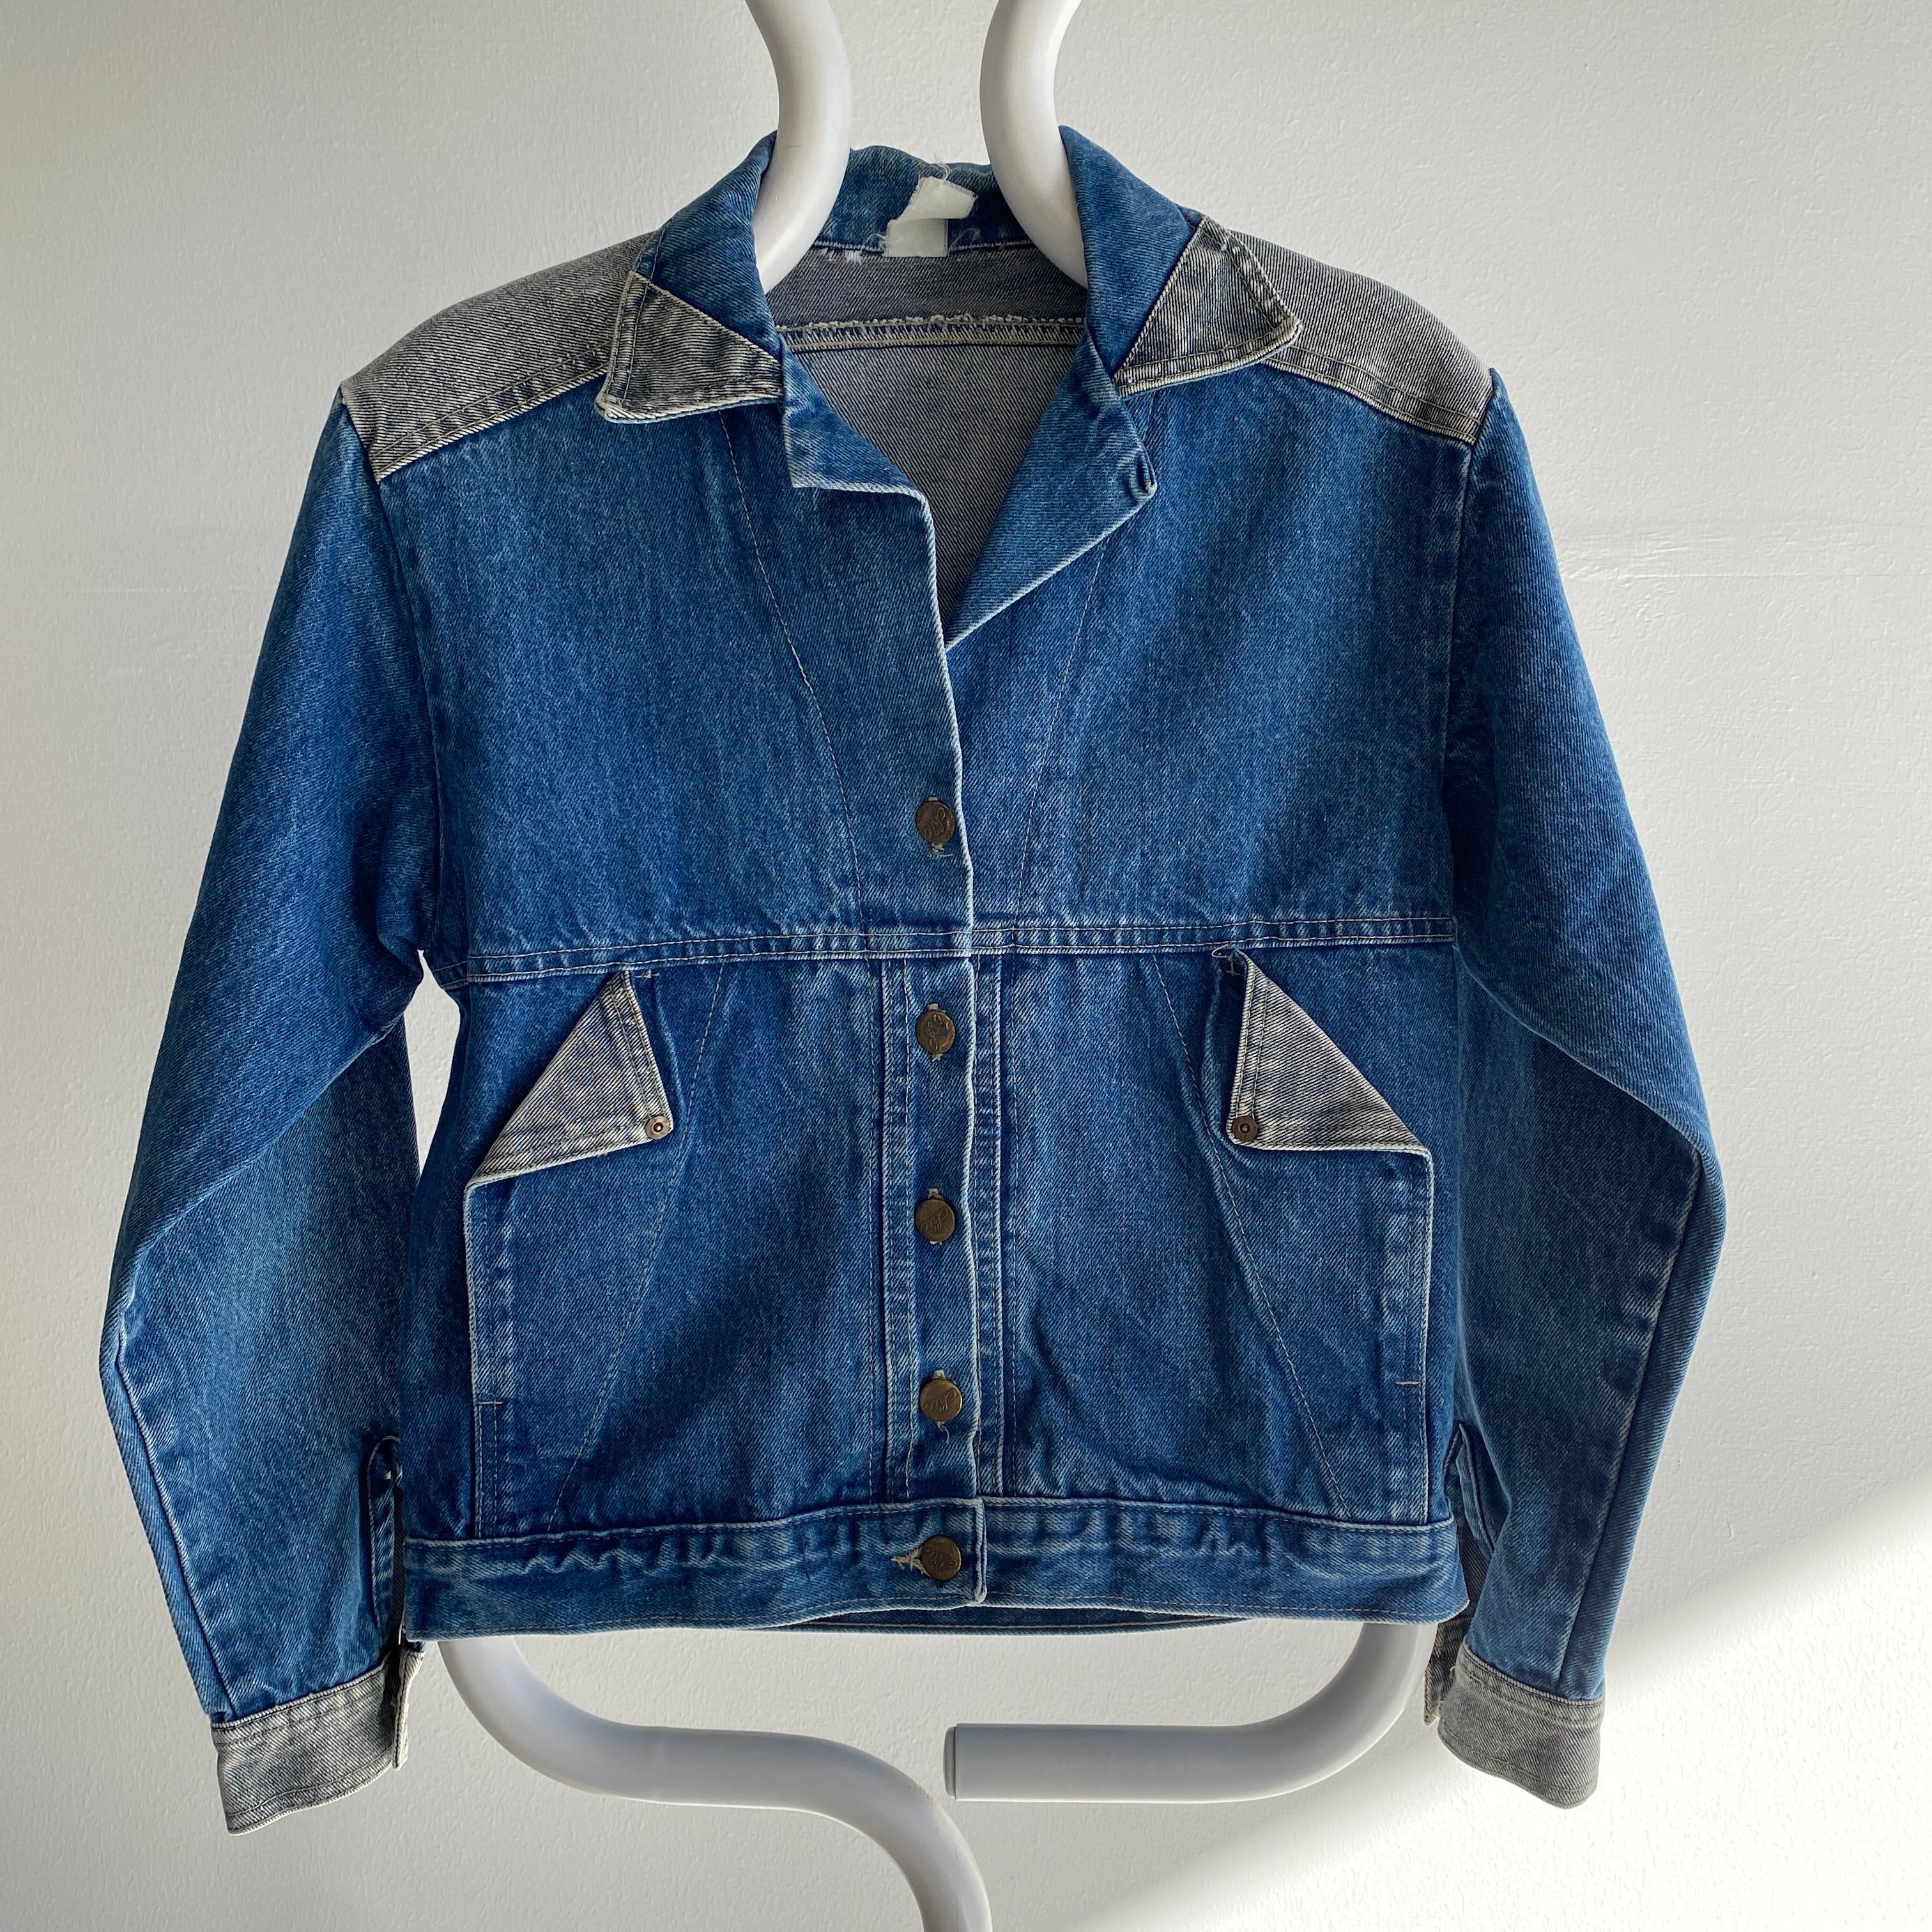 PSWL Two Tone Denim Jacket - blue | Garmentory